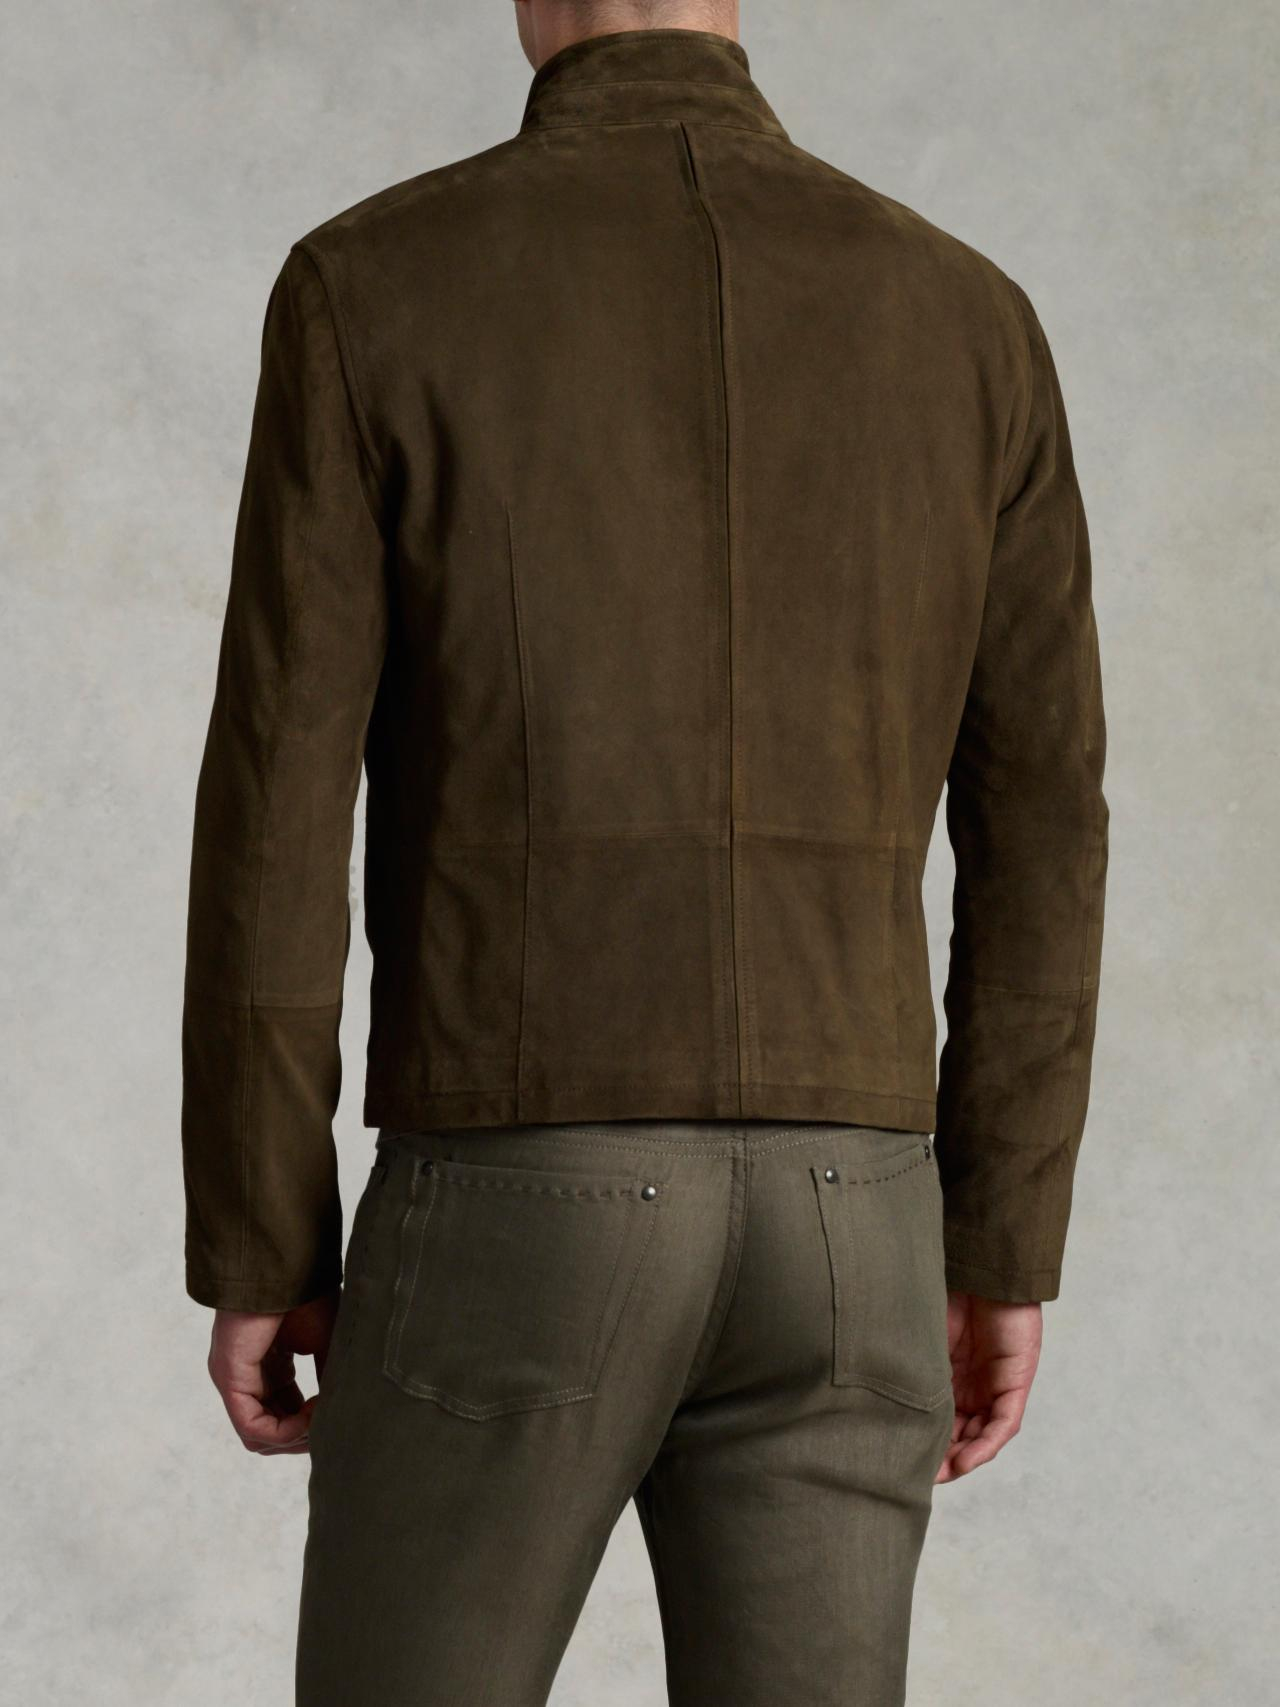 Lyst - John Varvatos Split Seam Leather Jacket in Natural for Men